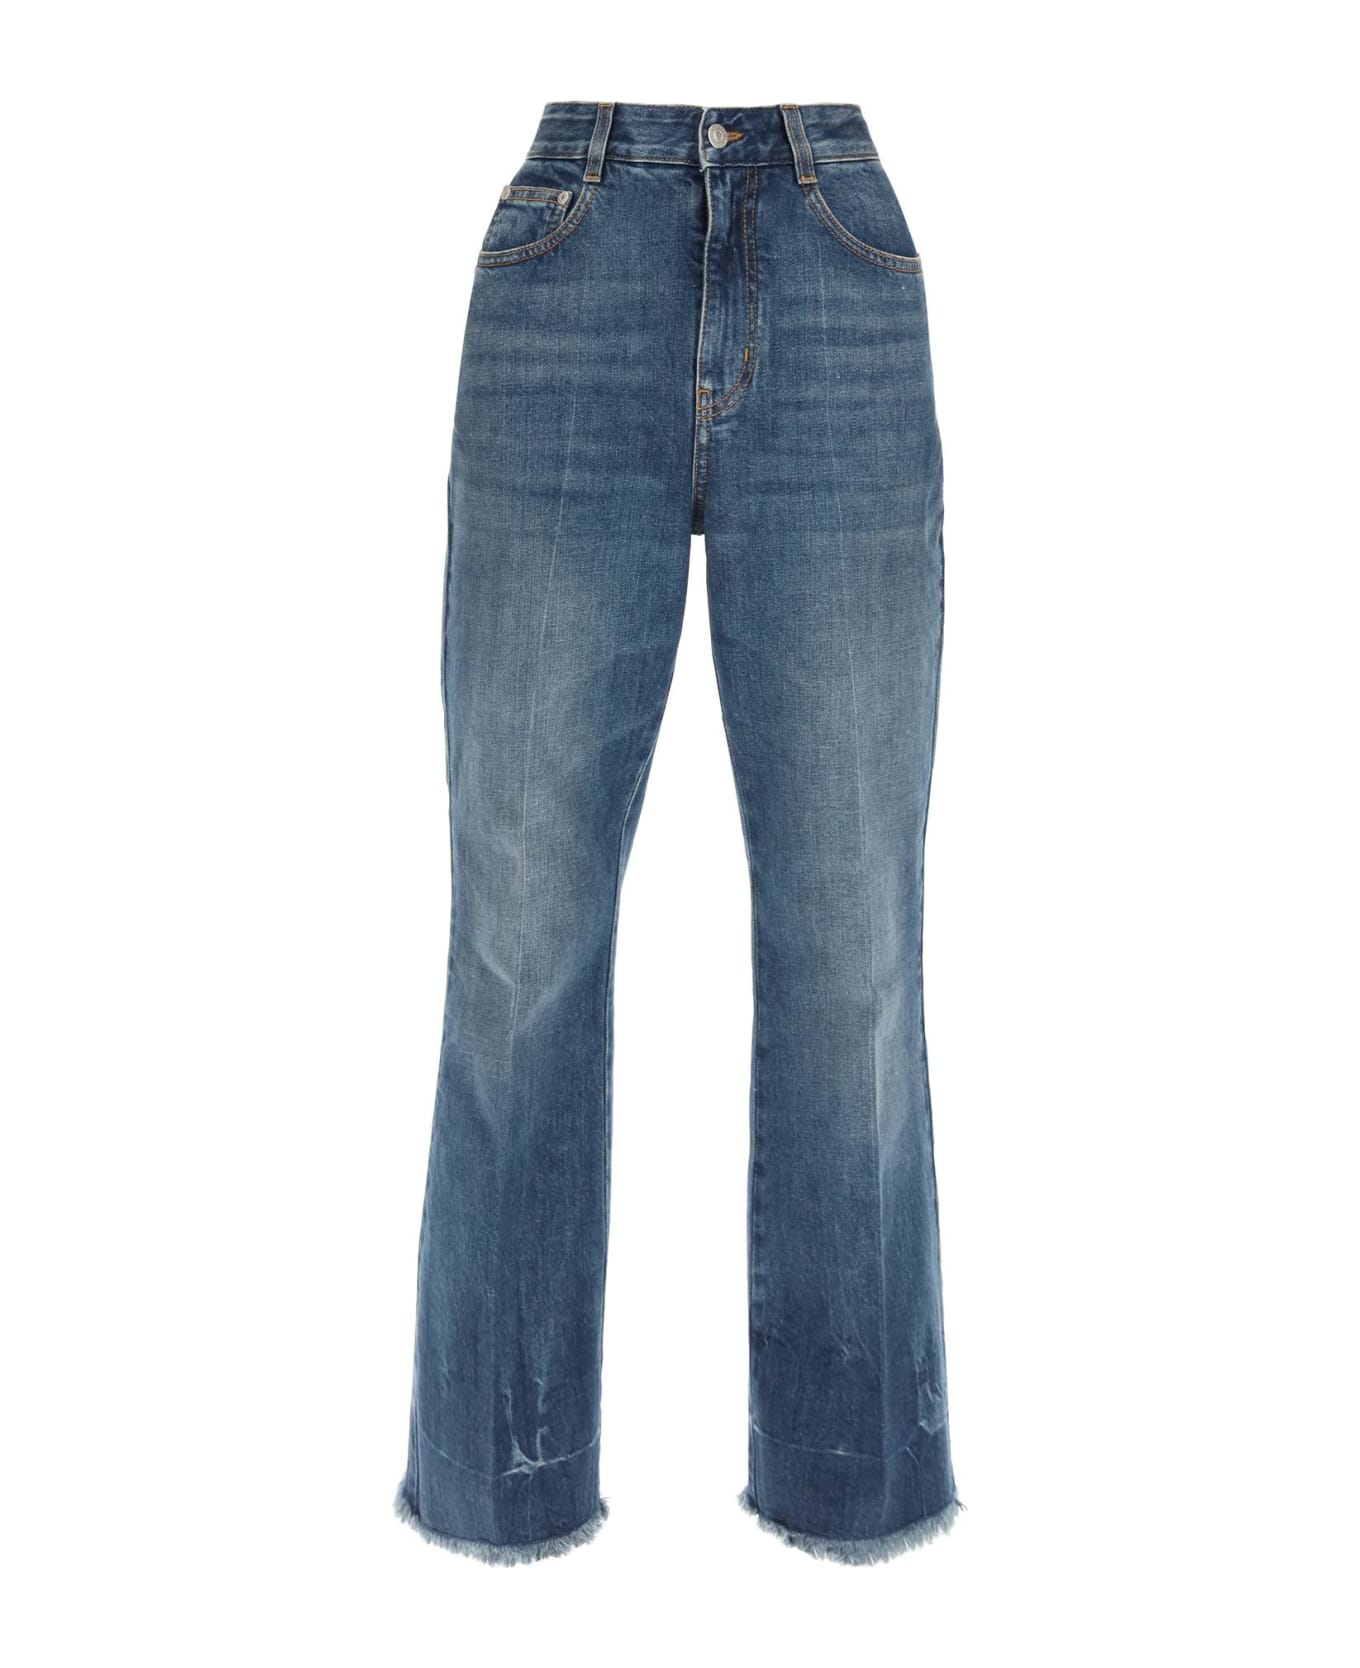 Stella McCartney Vintage Dark Flared Jeans - Blu